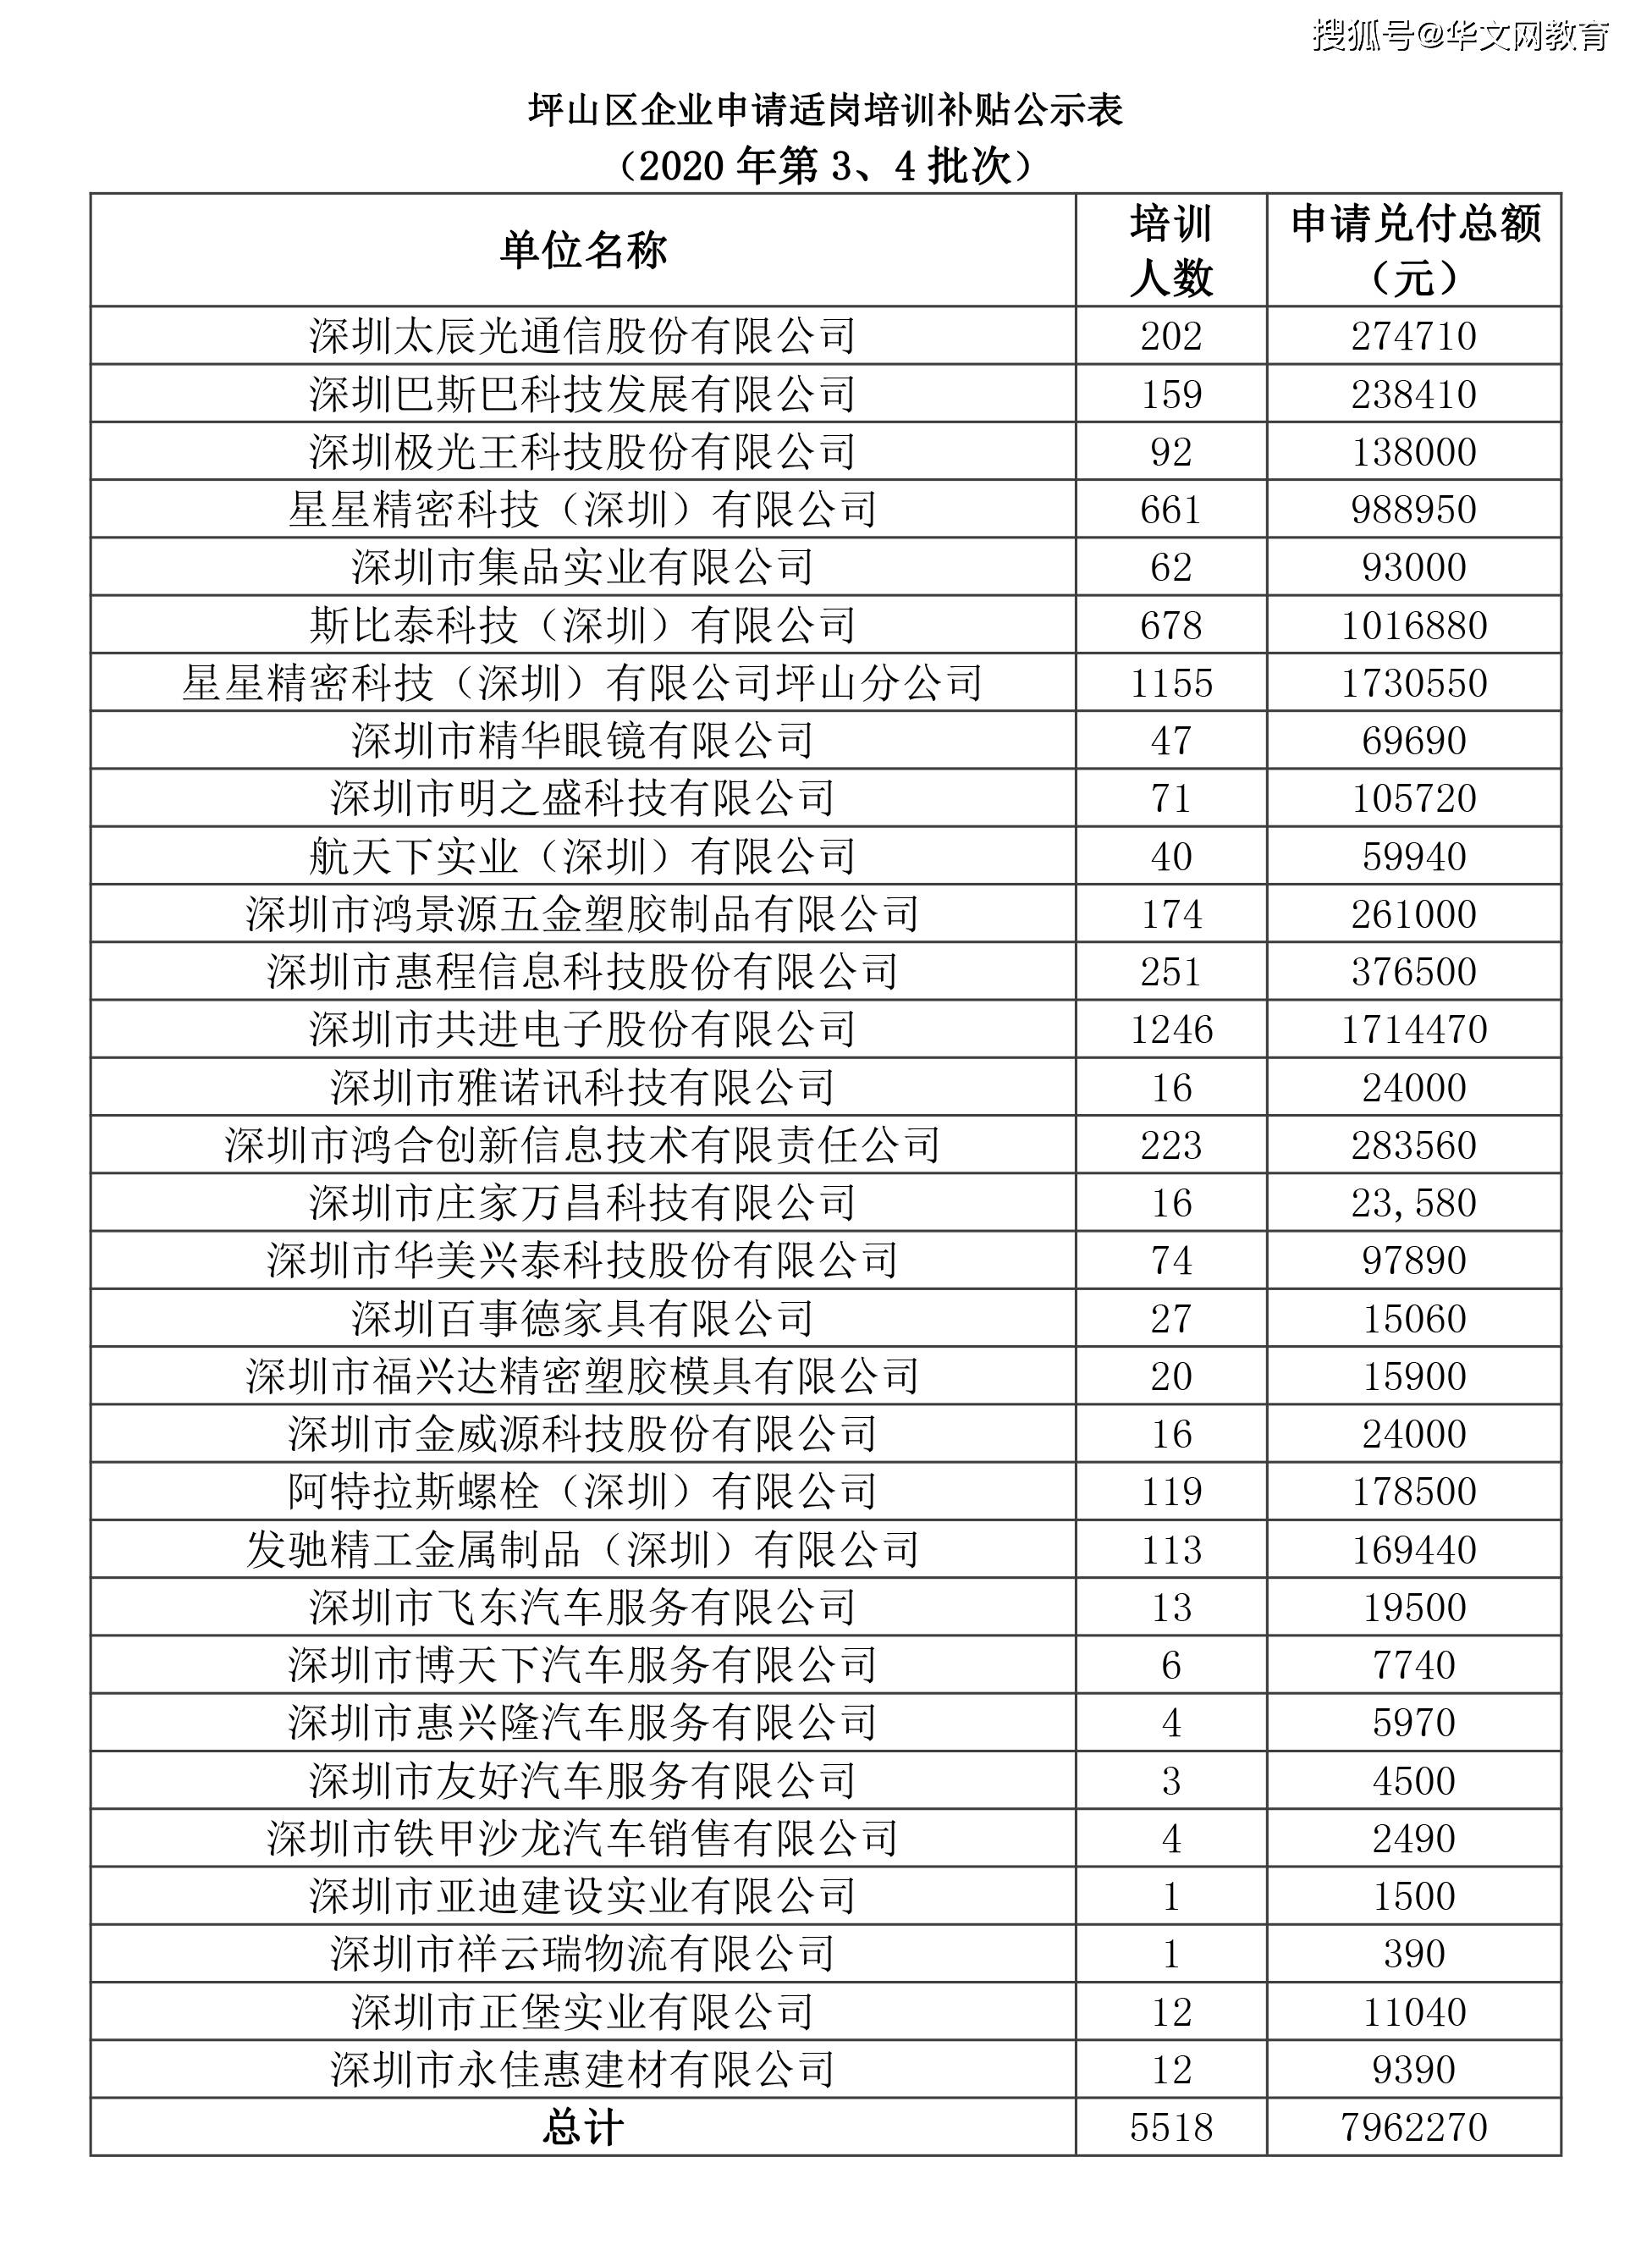 火狐娱乐线上平台-
深圳南山、罗湖、福田、龙华、灼烁适岗培训补助申请发放企业公示名单(图3)